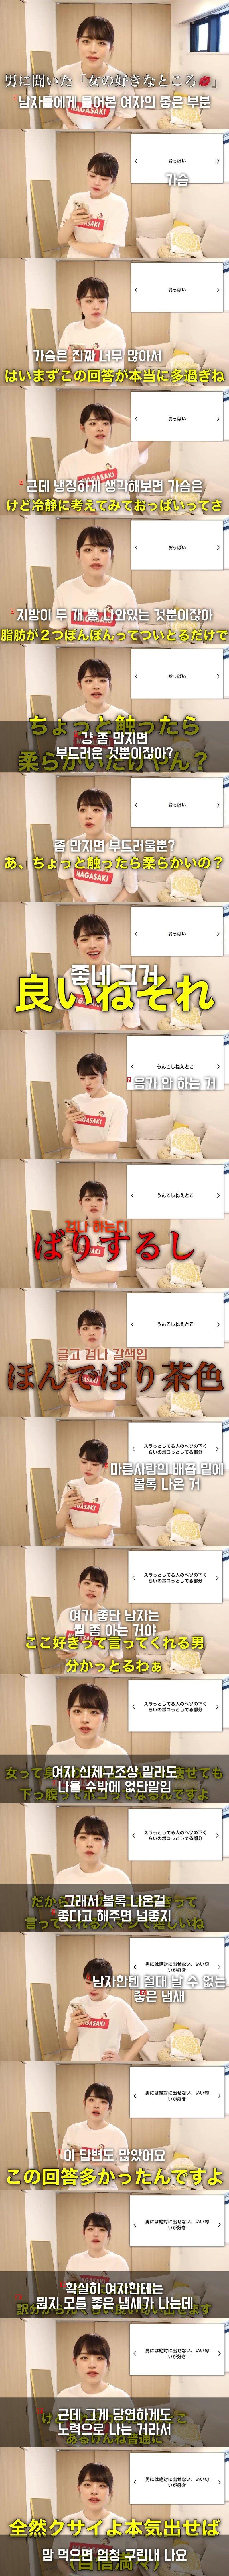 여자의 좋은 부분을 물어본 일본 유튜버